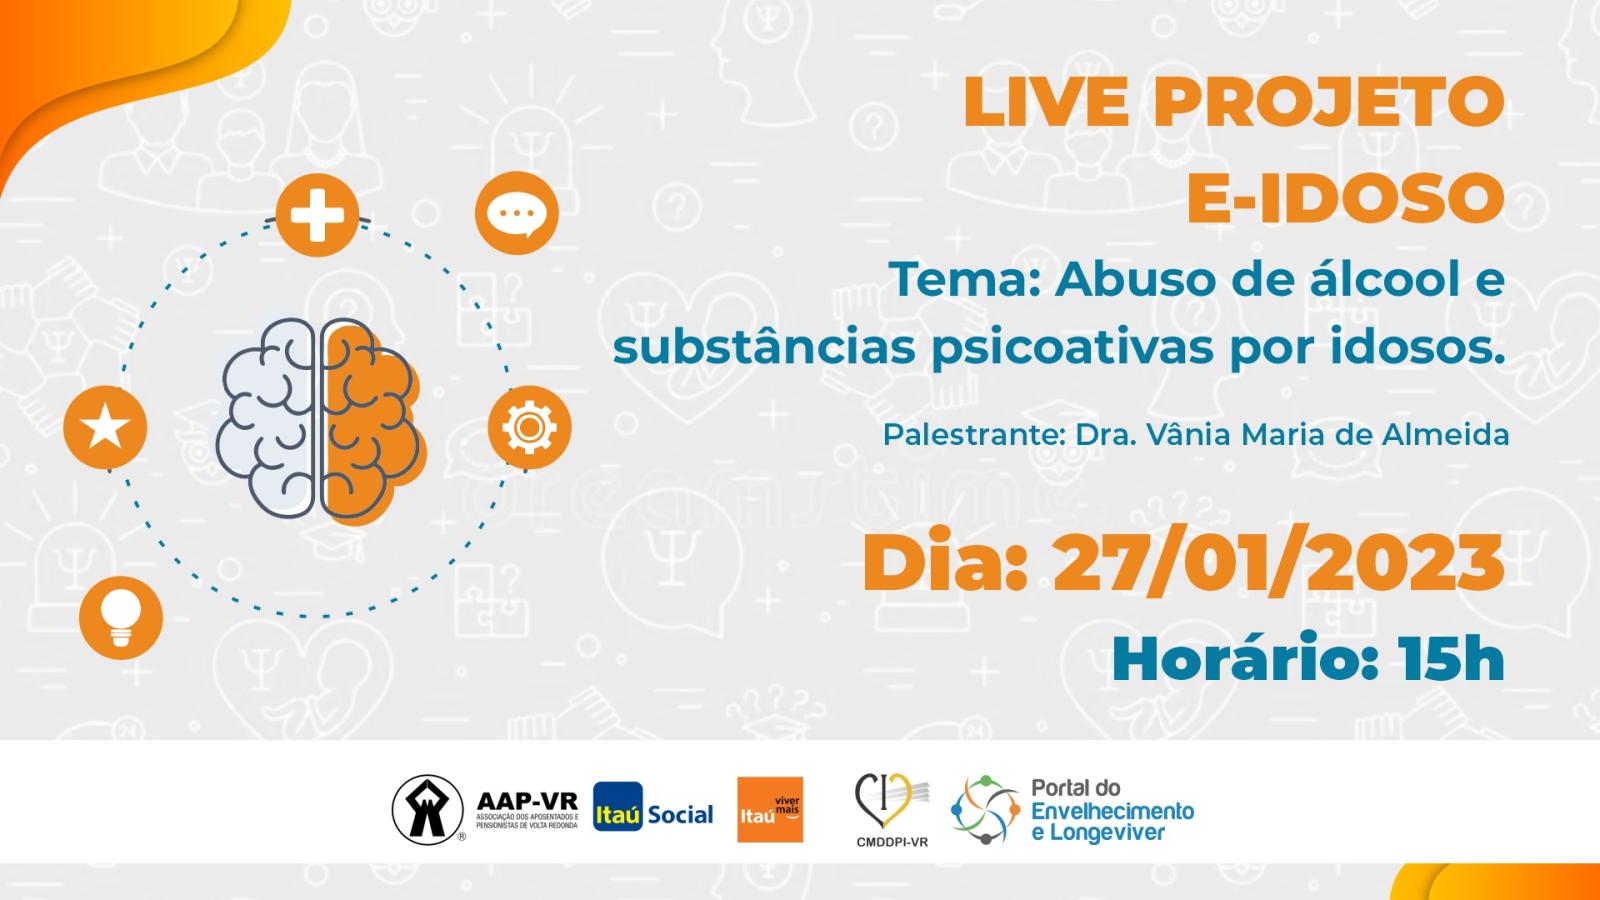 27/01/2023 - Live projeto E-IDOSO: Abuso de álcool e substâncias psicoativas por idosos.